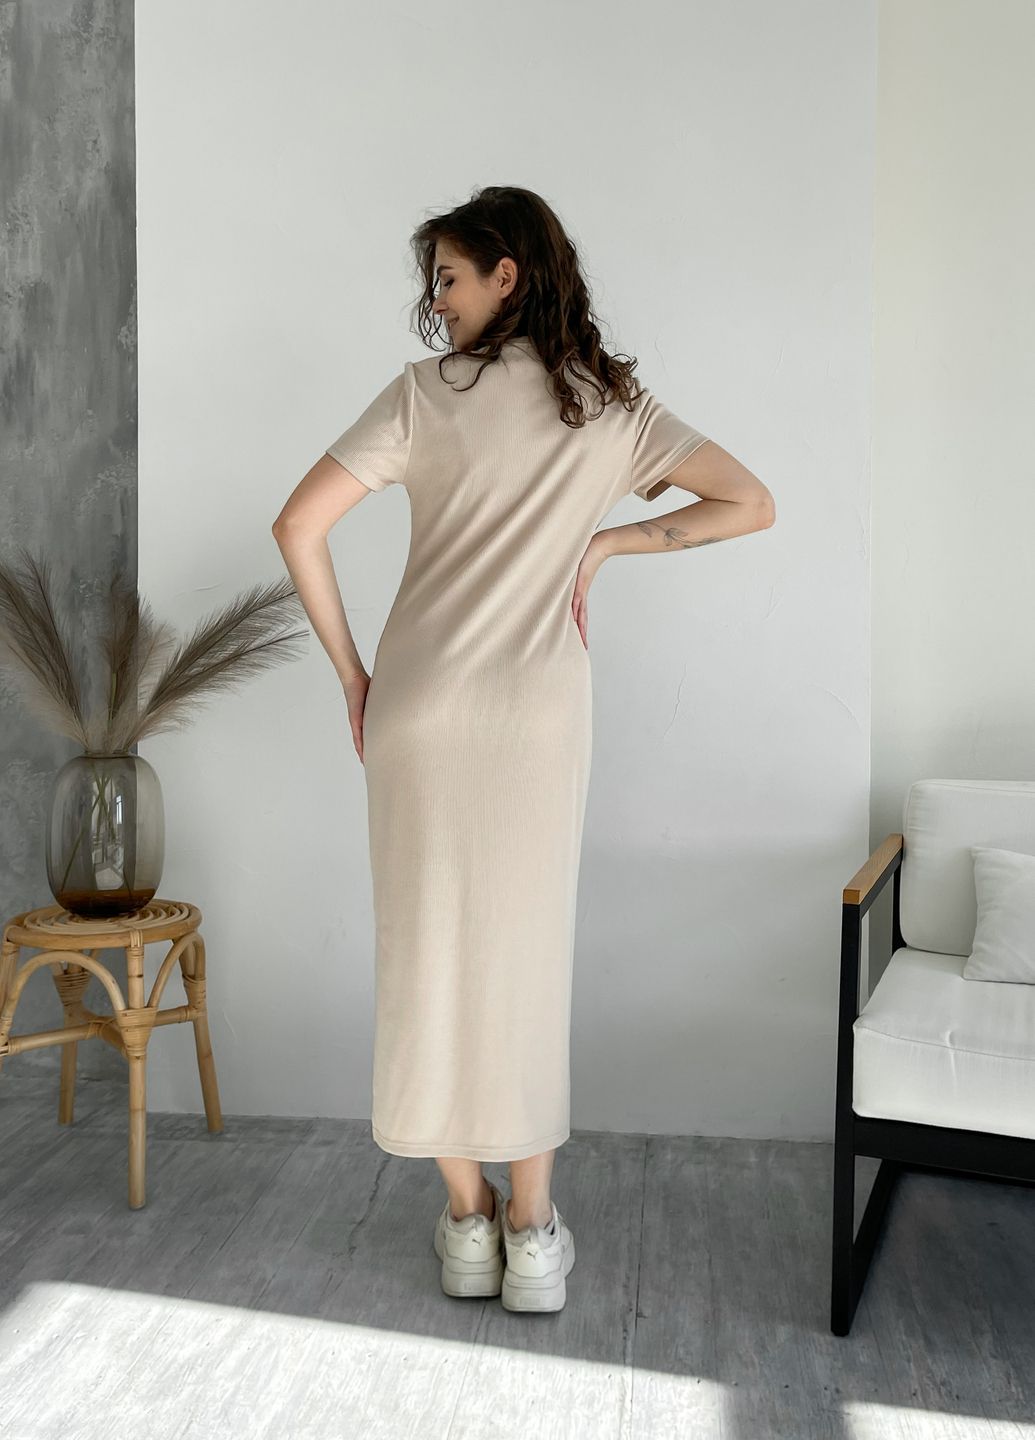 Купить Длинное платье-футболка в рубчик светло-бежевое Merlini Кассо 700000122 размер 42-44 (S-M) в интернет-магазине